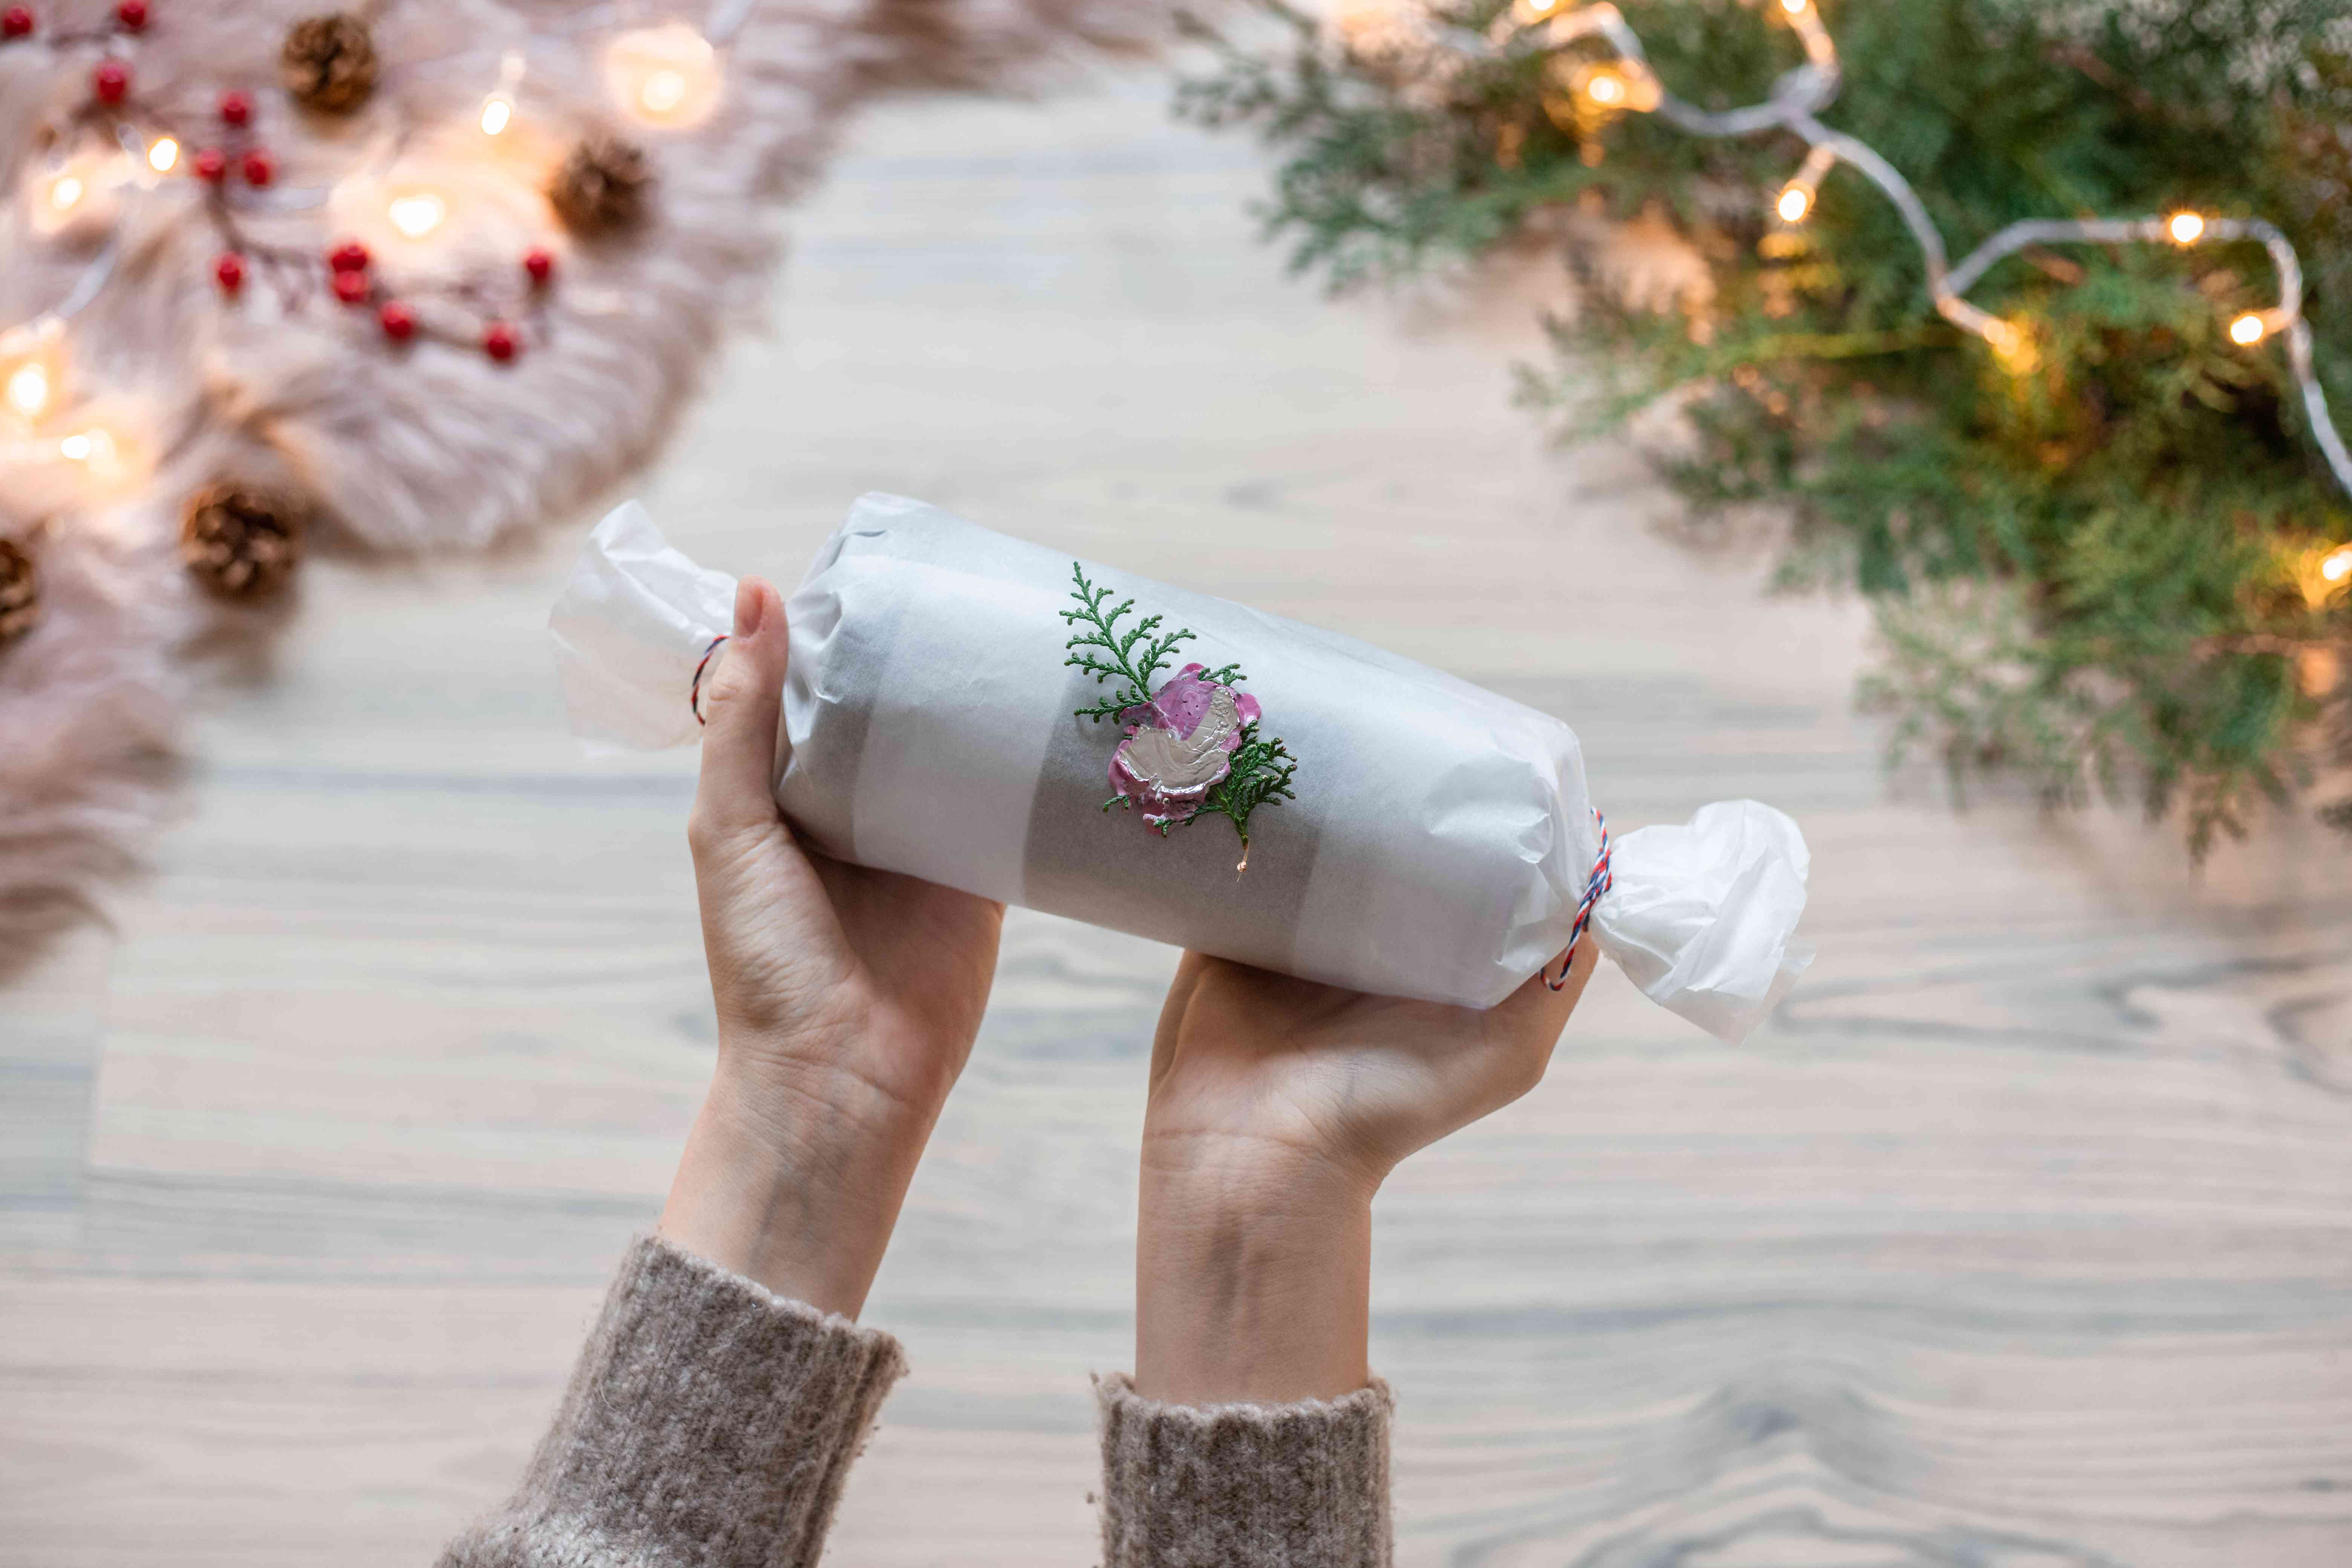 羊皮纸包裹咖啡杯与圣诞节天赋